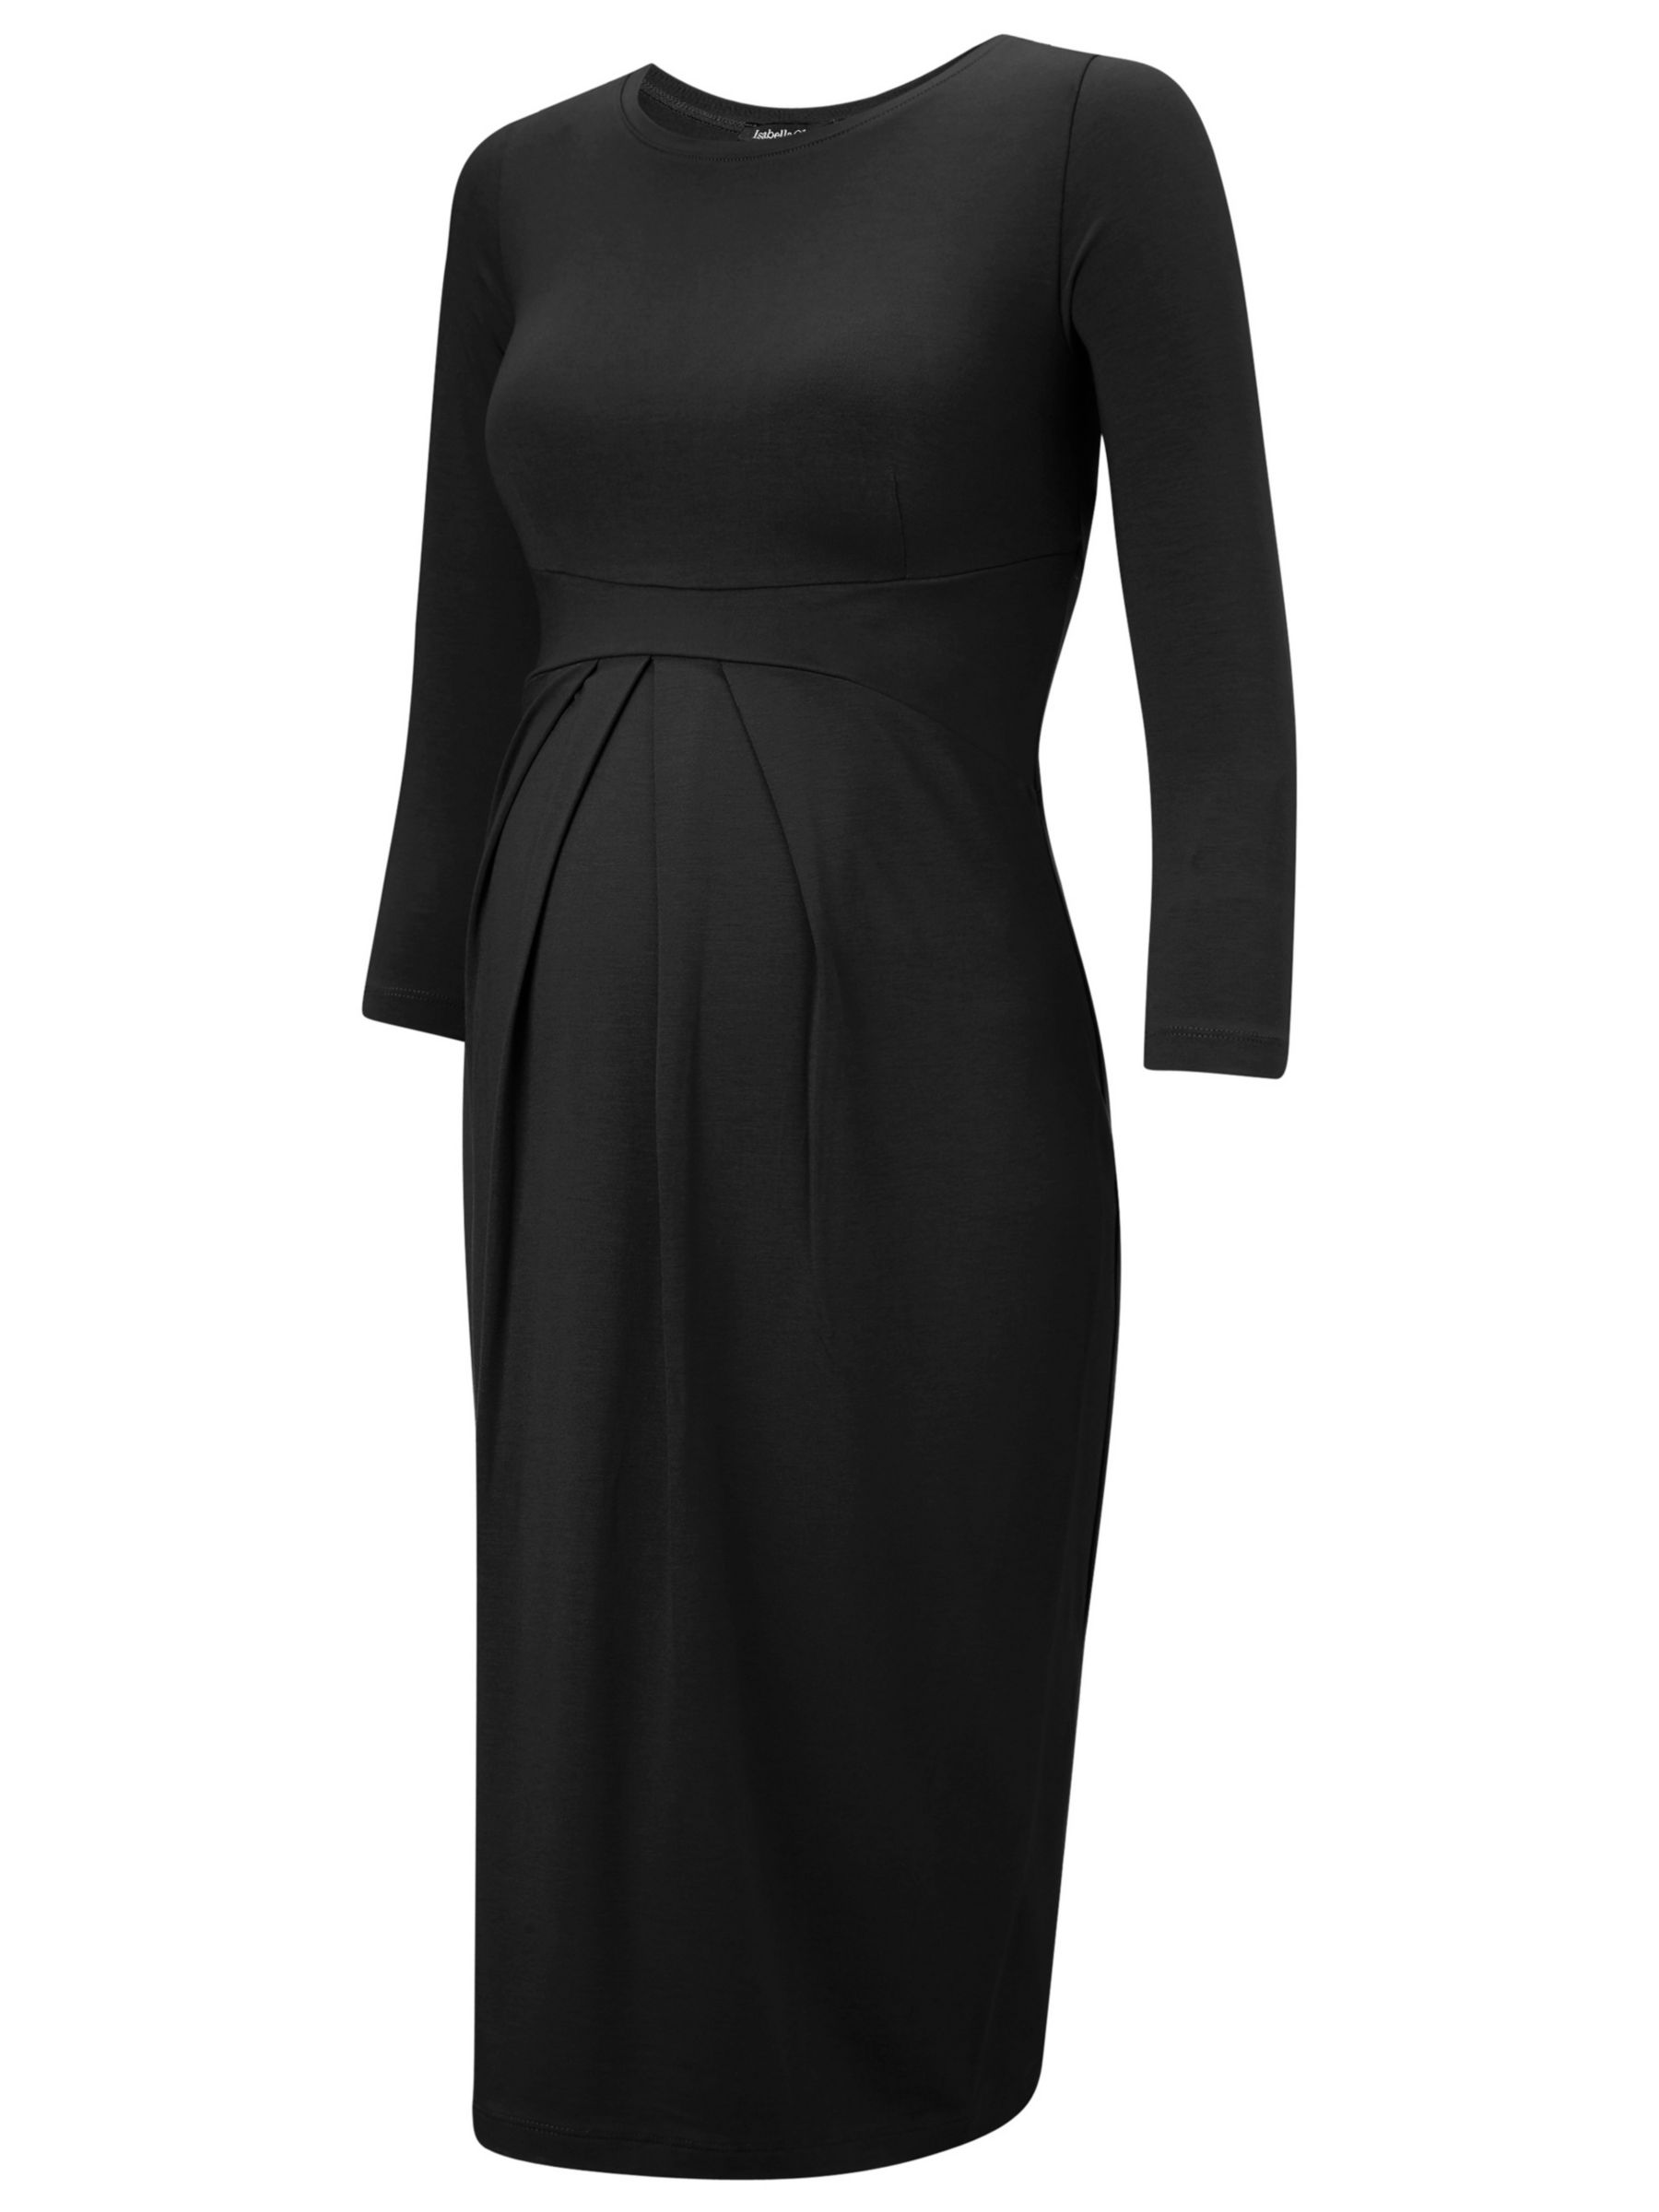 Isabella Oliver Ivybridge Dress, Black